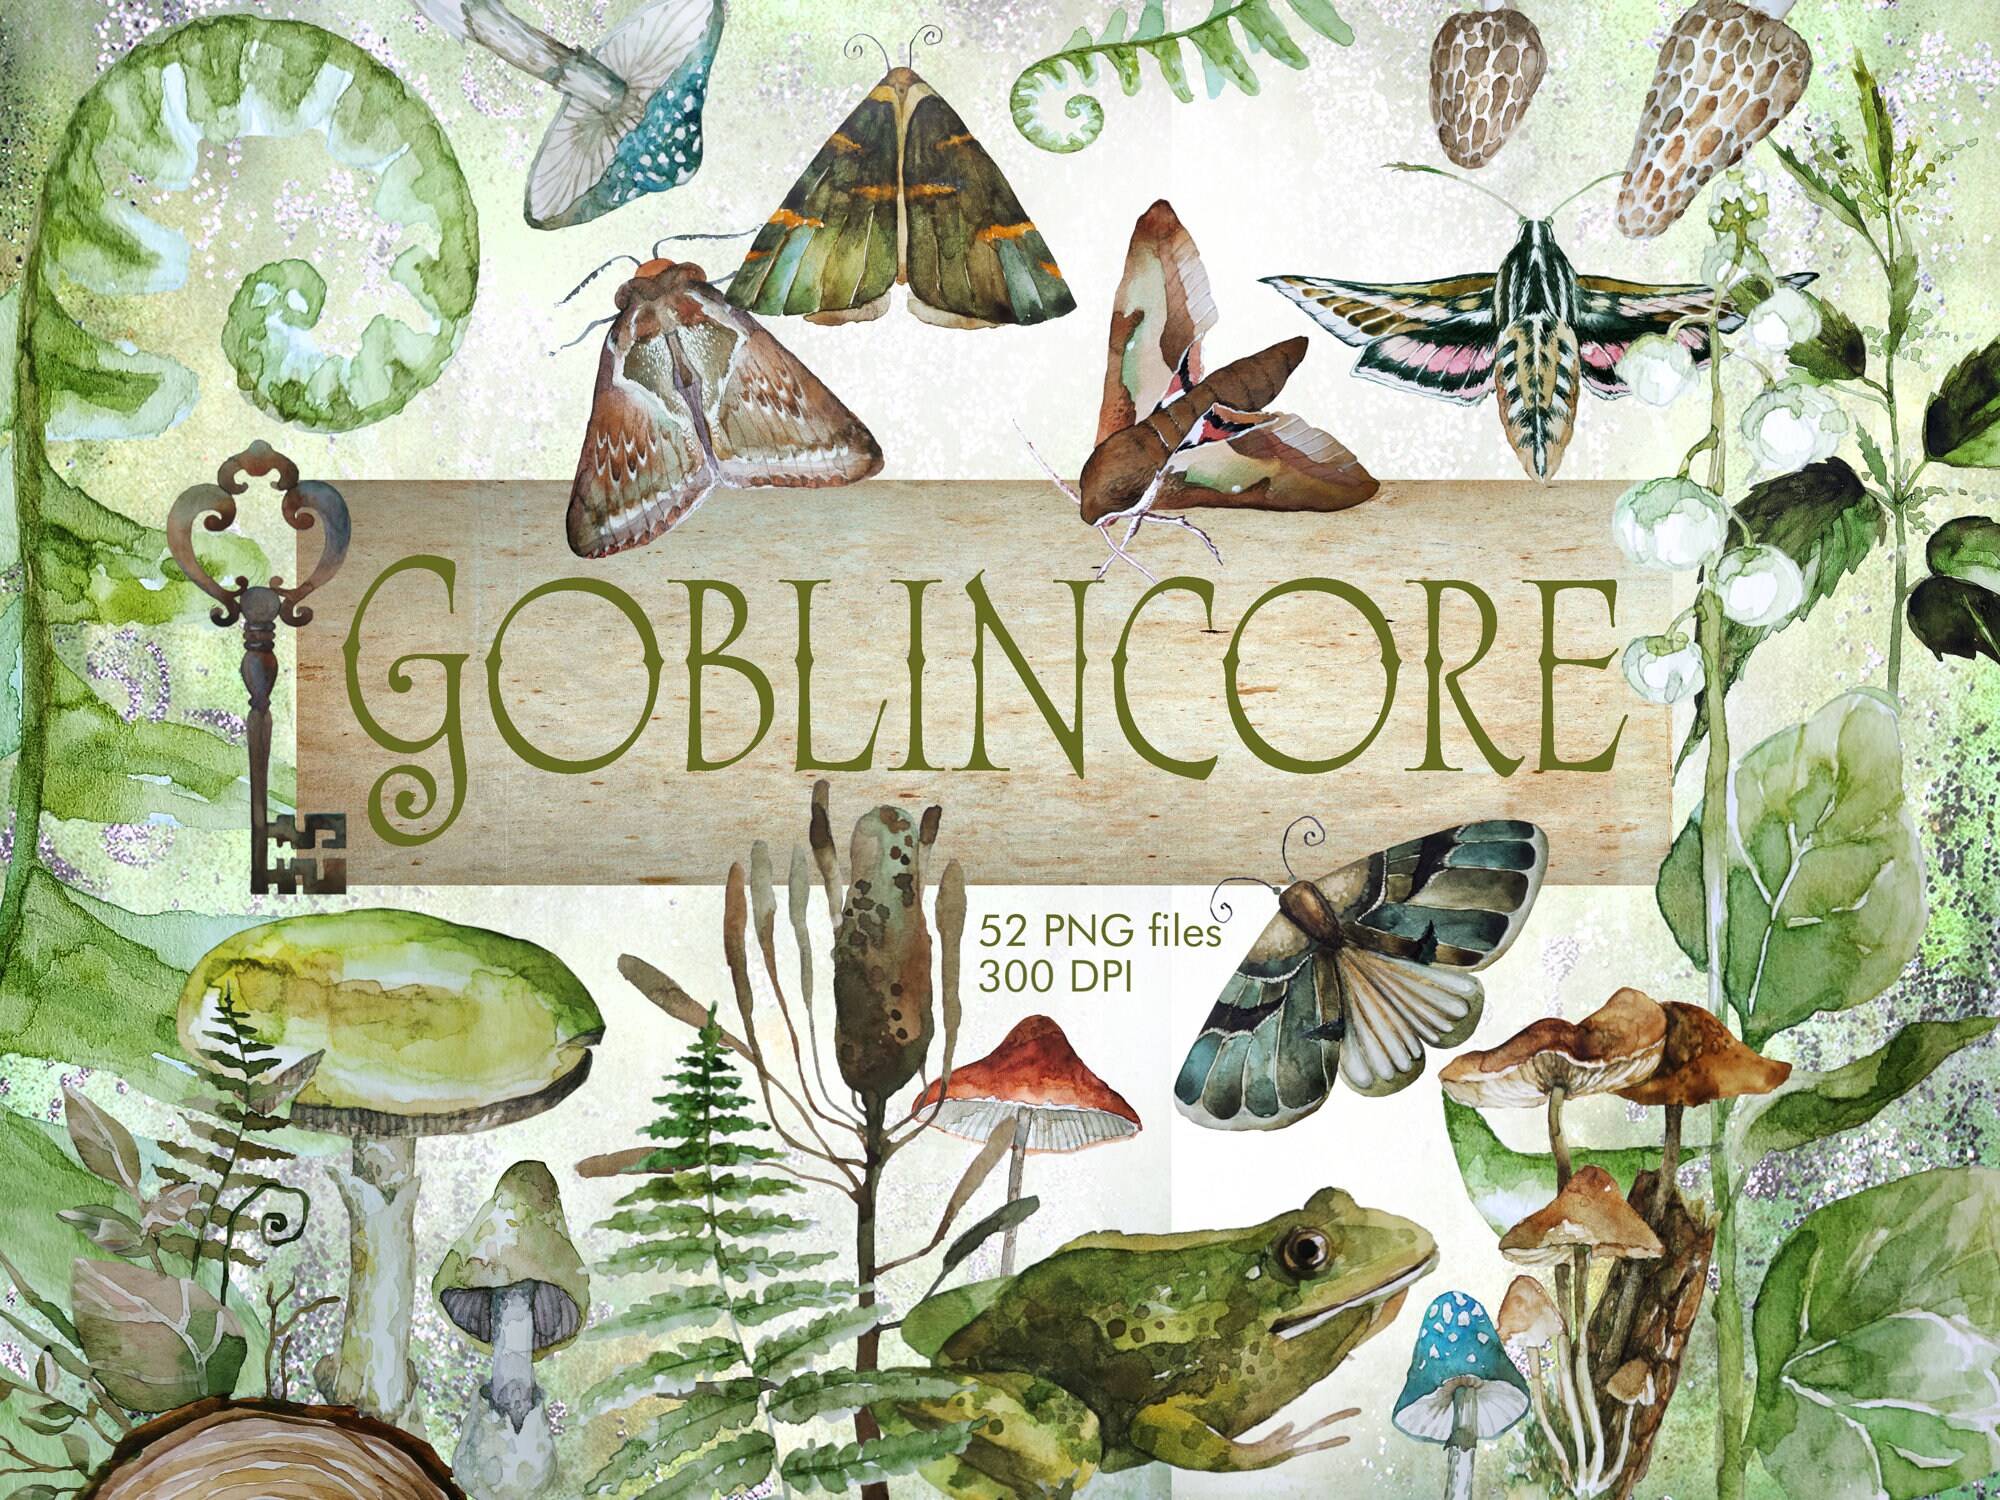 Goblincore humanized by lavendertowne : r/goblincore